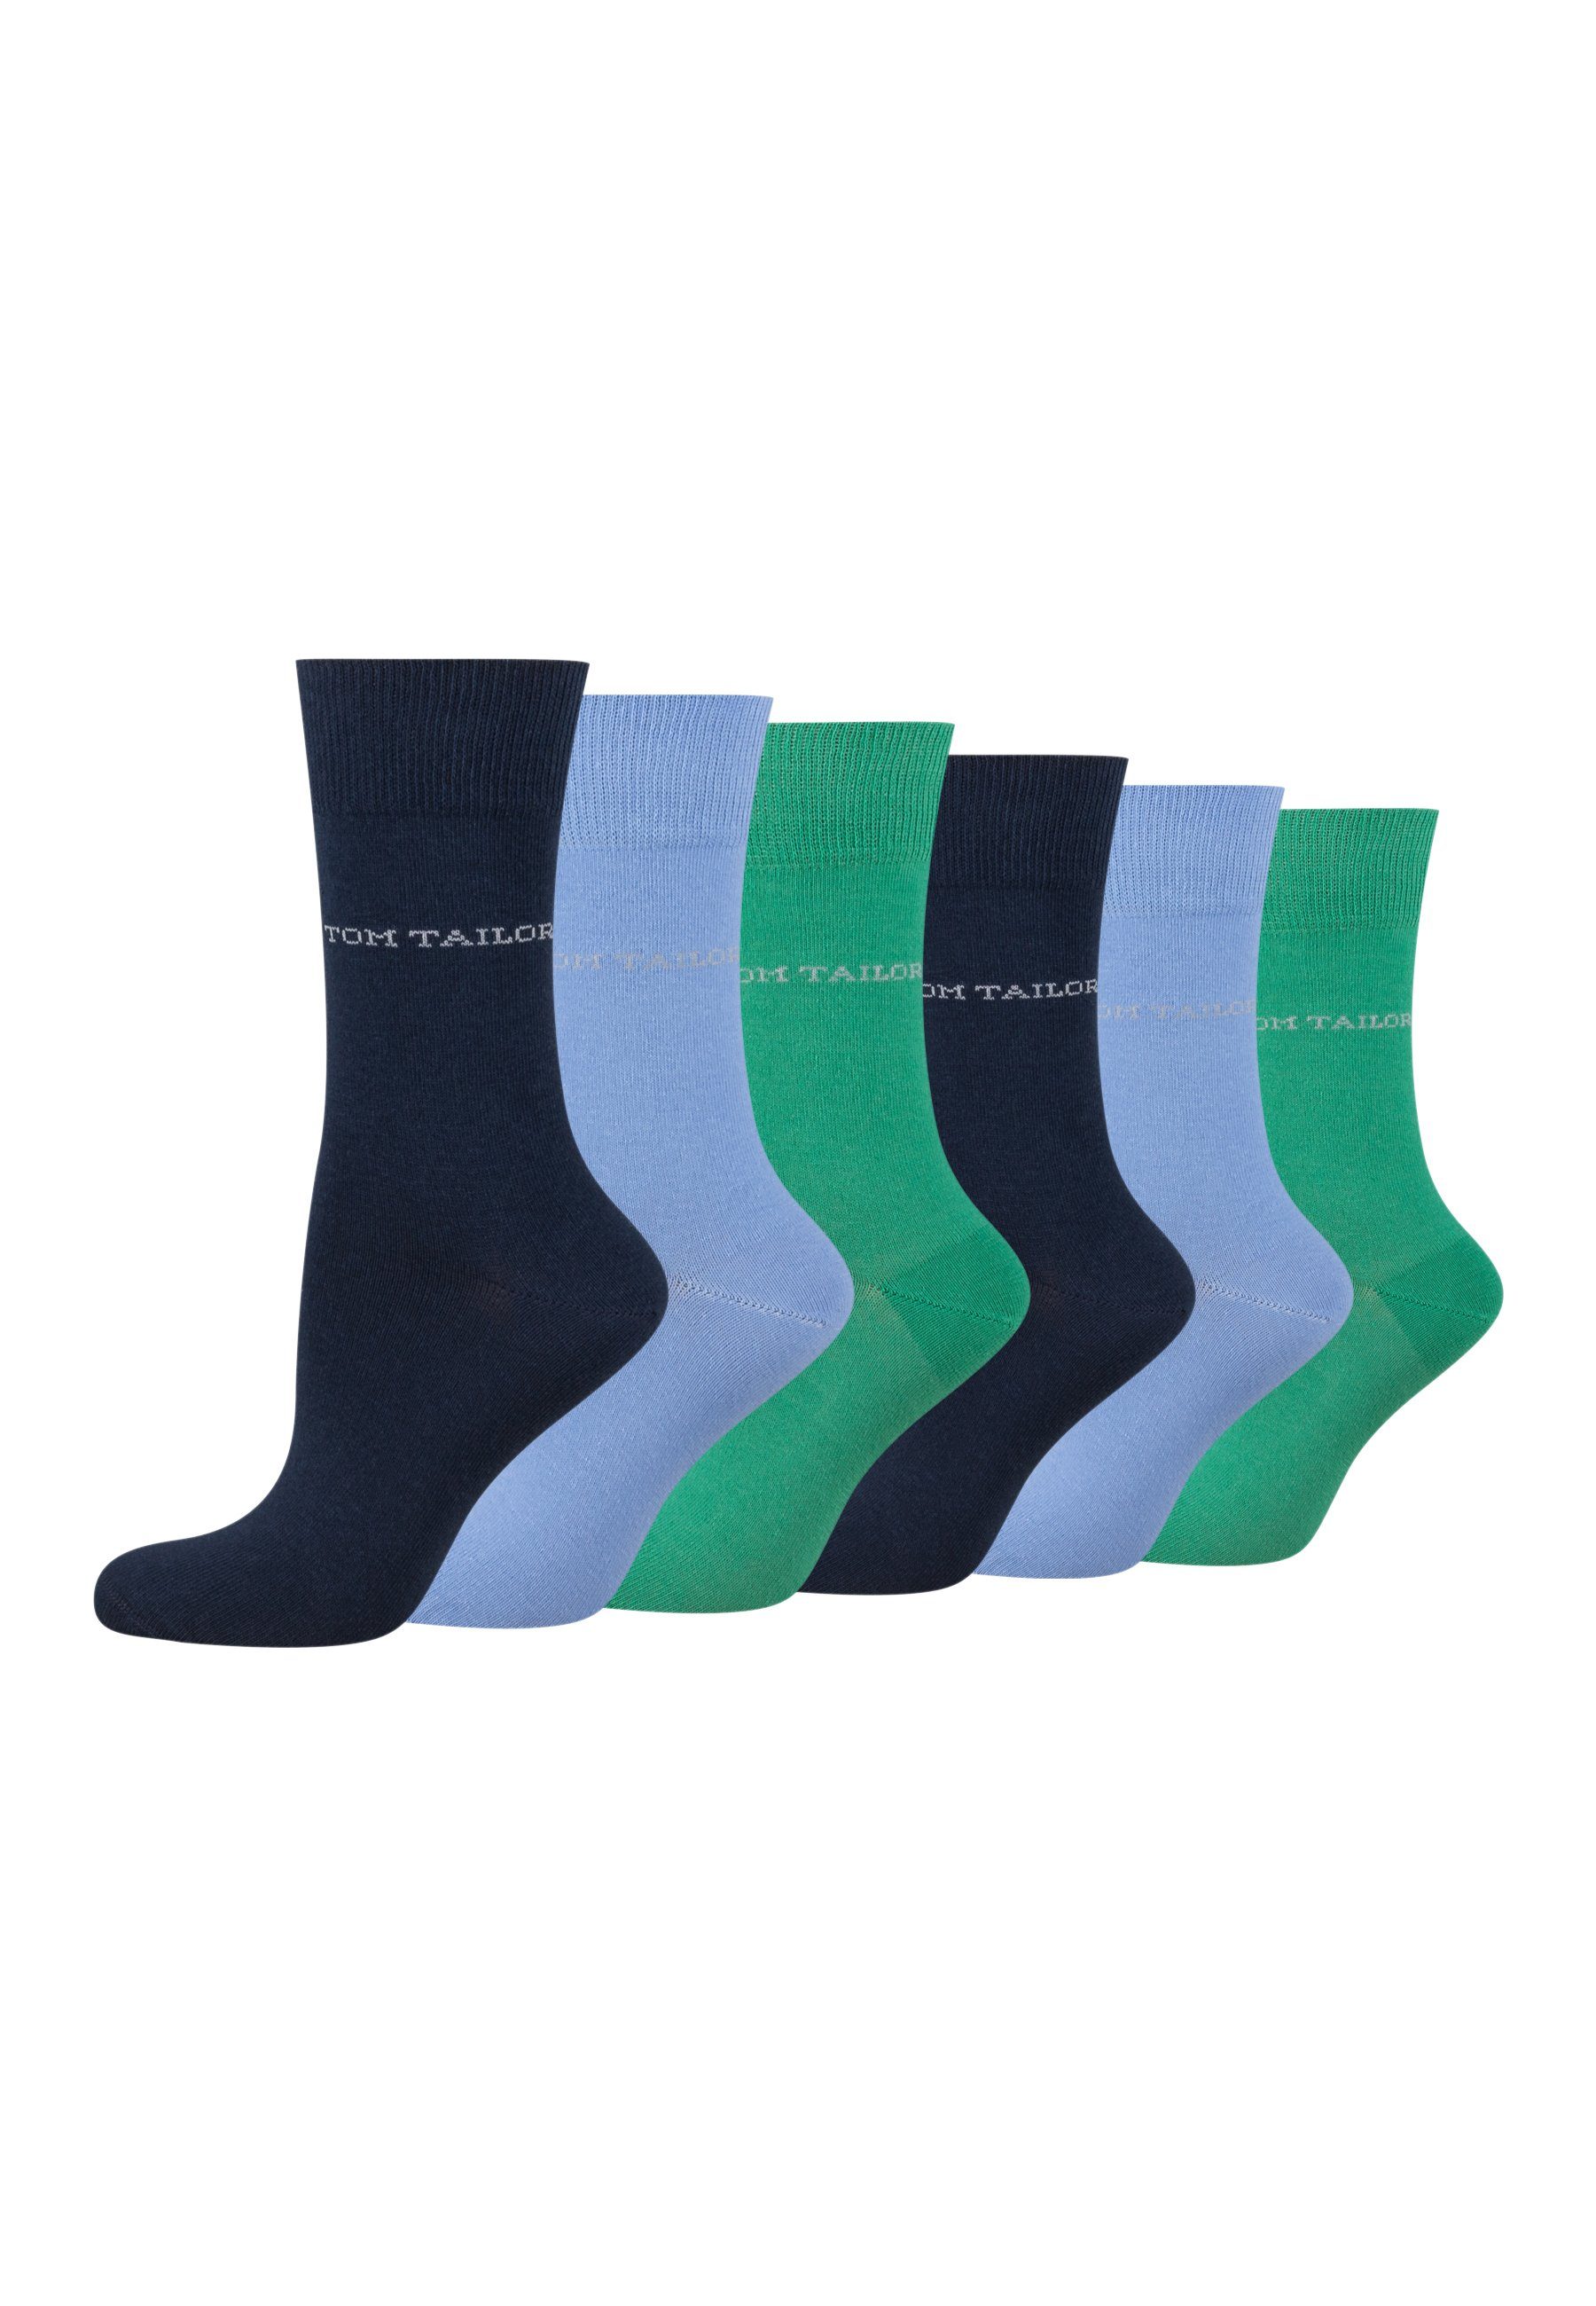 TOM TAILOR Socken 9609396042_6 TOM TAILOR Socken Damen – Baumwollsocken für Alltag und Freizeit 6 Paar blue